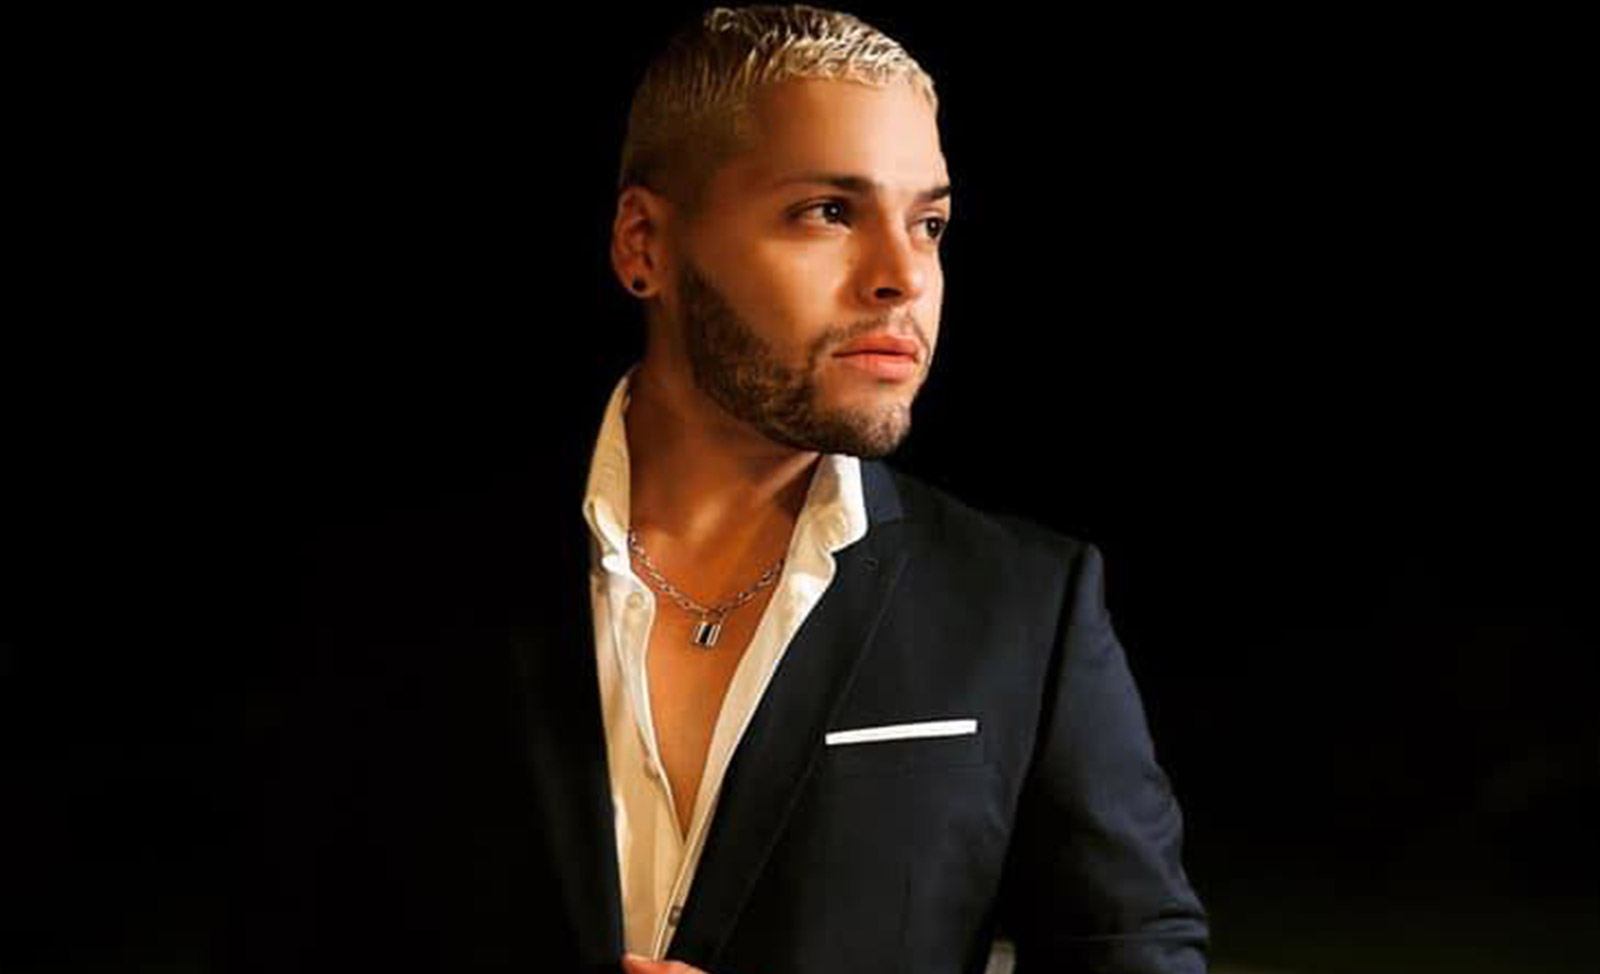 El cantante puertorriqueño Grey García nos presenta su más reciente sencillo musical + video: “Lento”